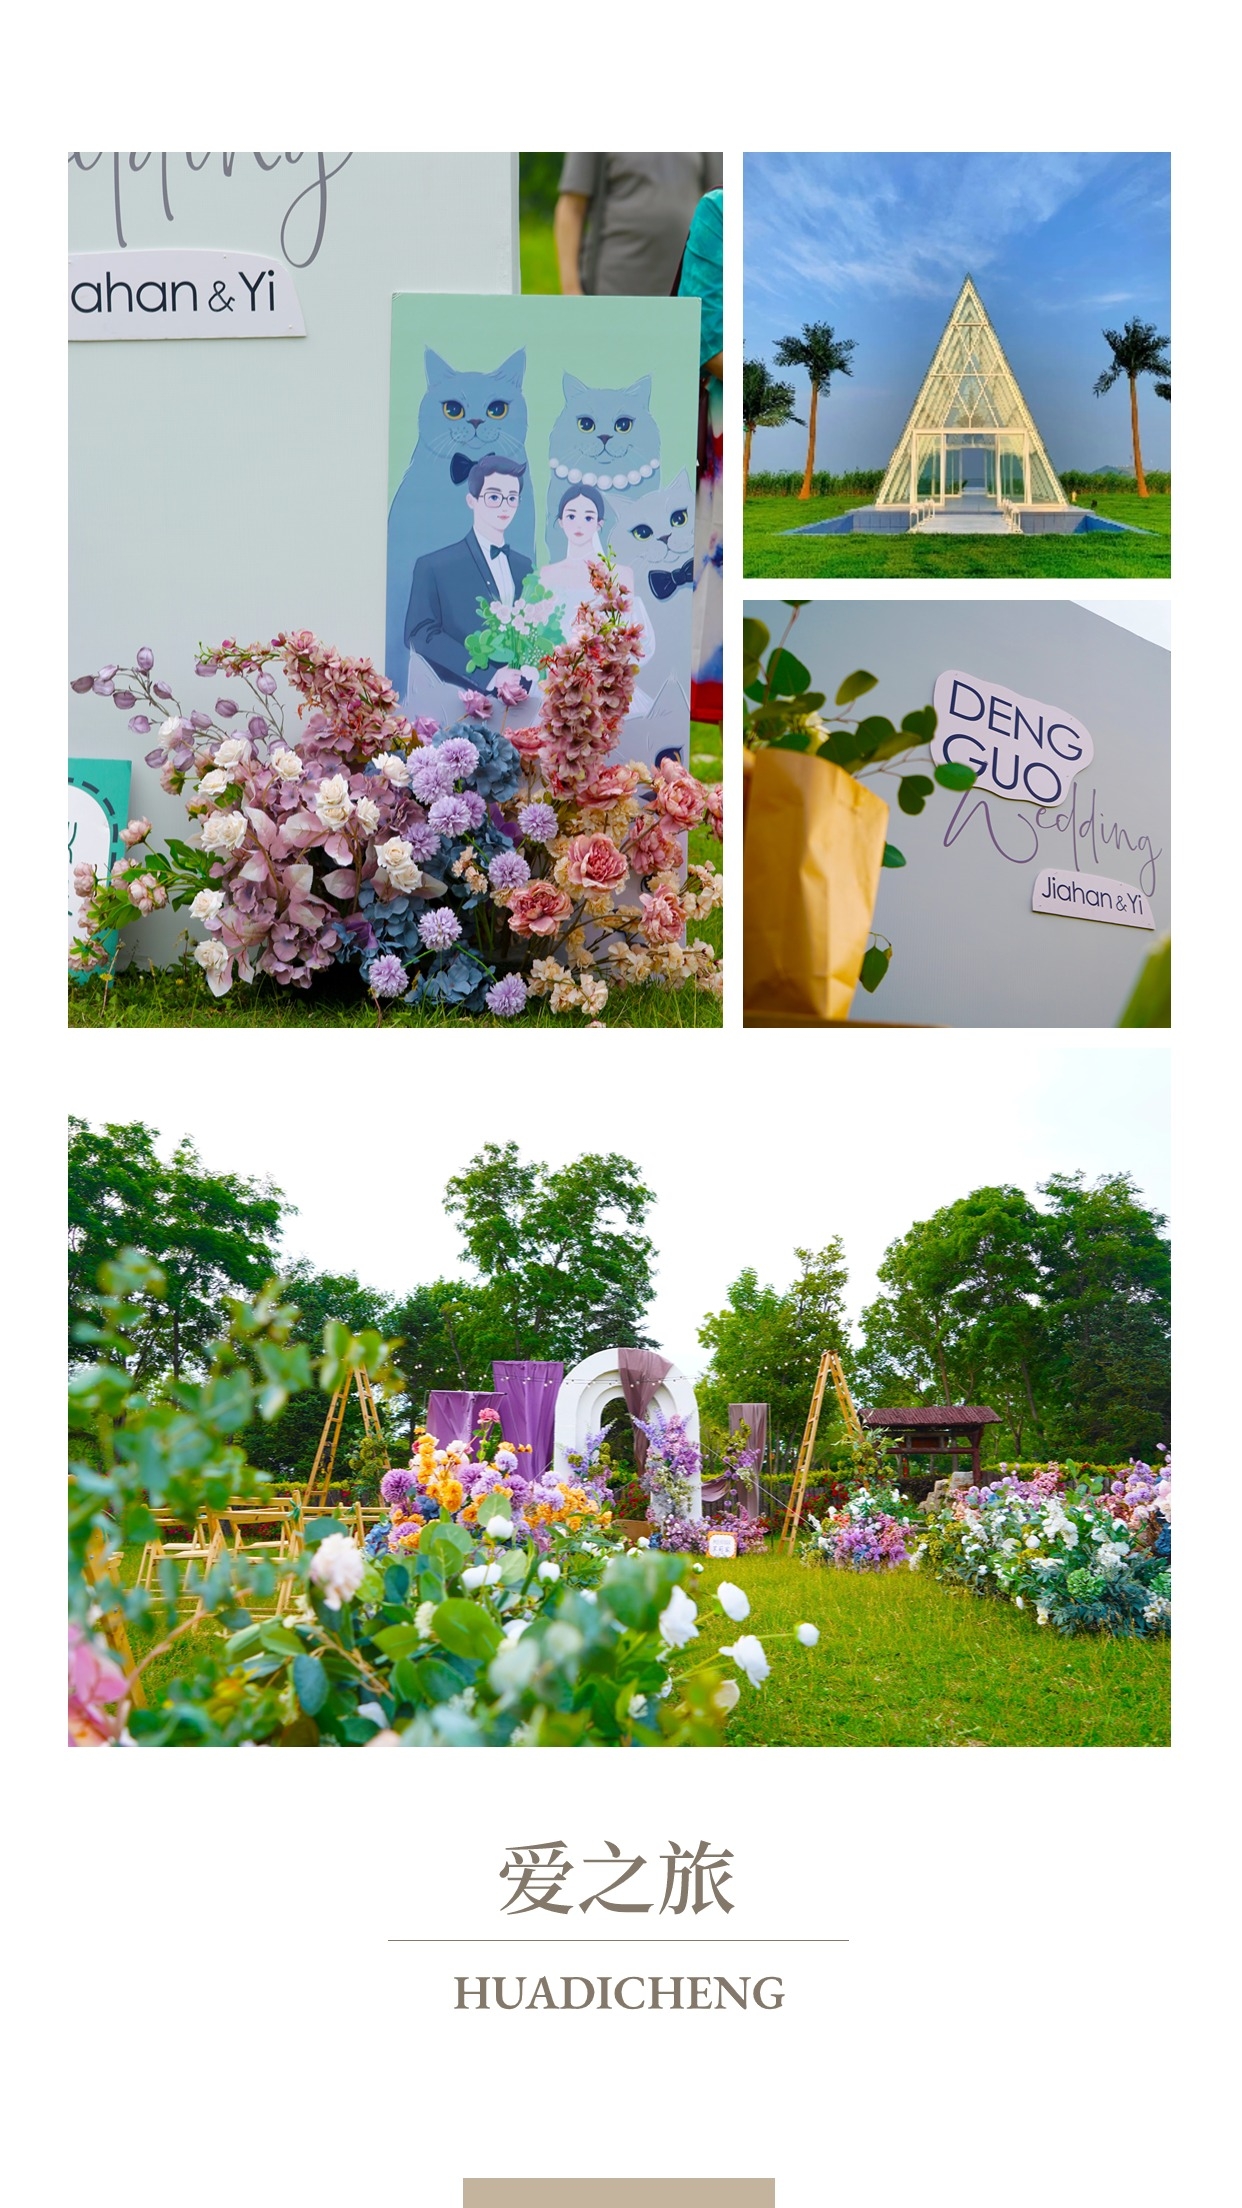 东方华地城草坪婚礼丨一场为爱而开始的狂欢